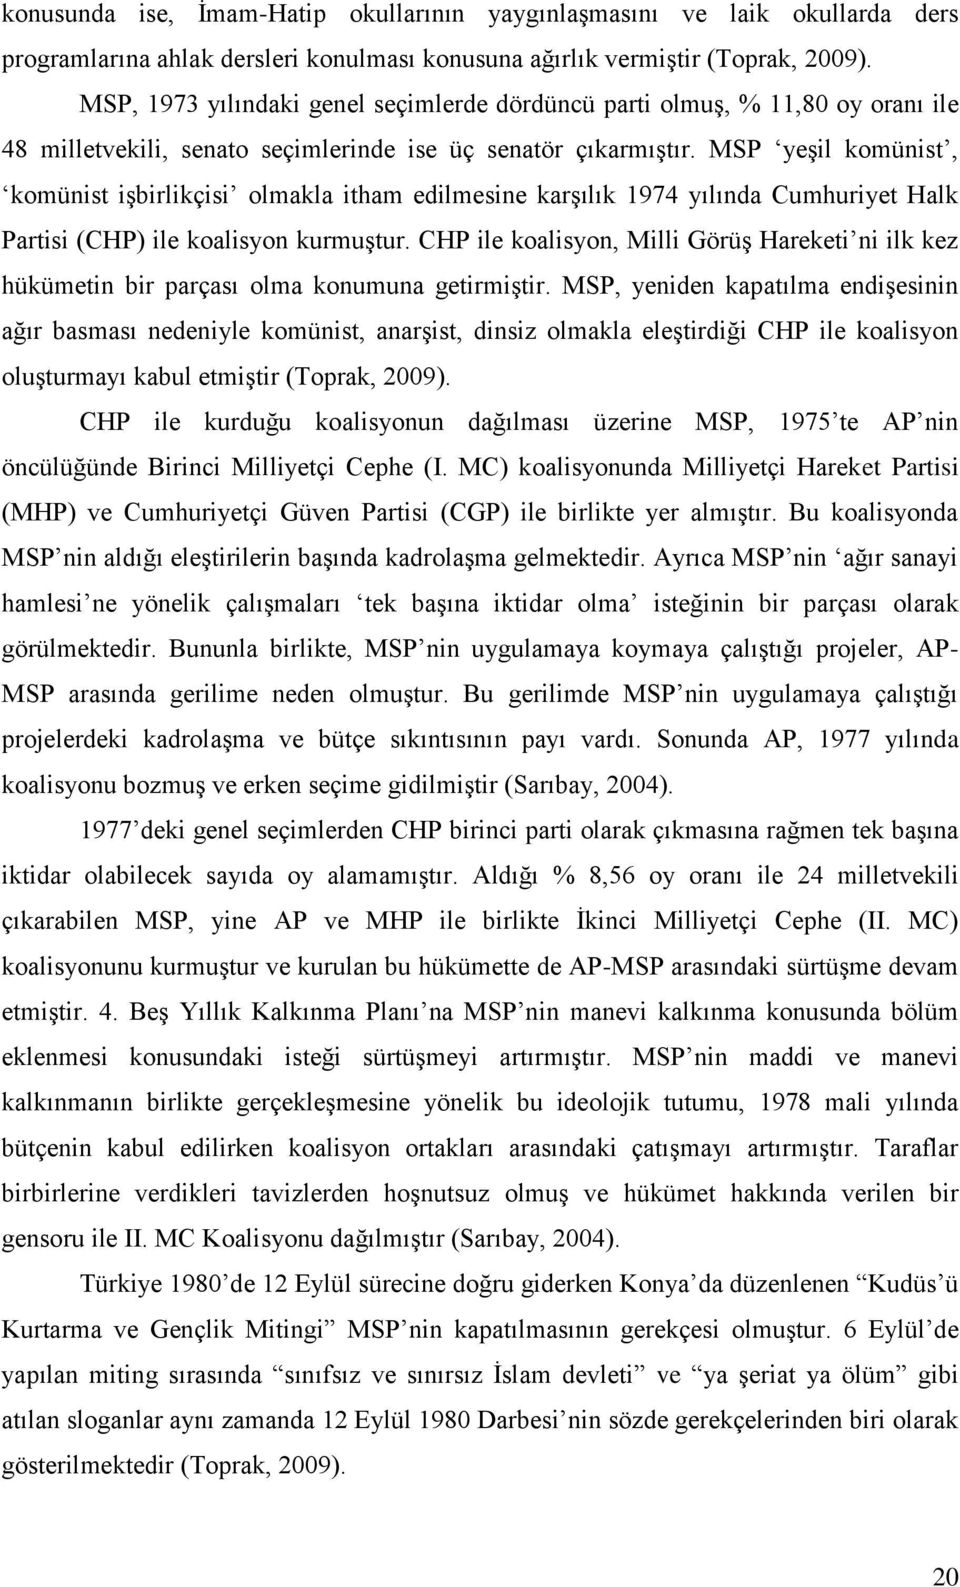 MSP yeşil komünist, komünist işbirlikçisi olmakla itham edilmesine karşılık 1974 yılında Cumhuriyet Halk Partisi (CHP) ile koalisyon kurmuştur.